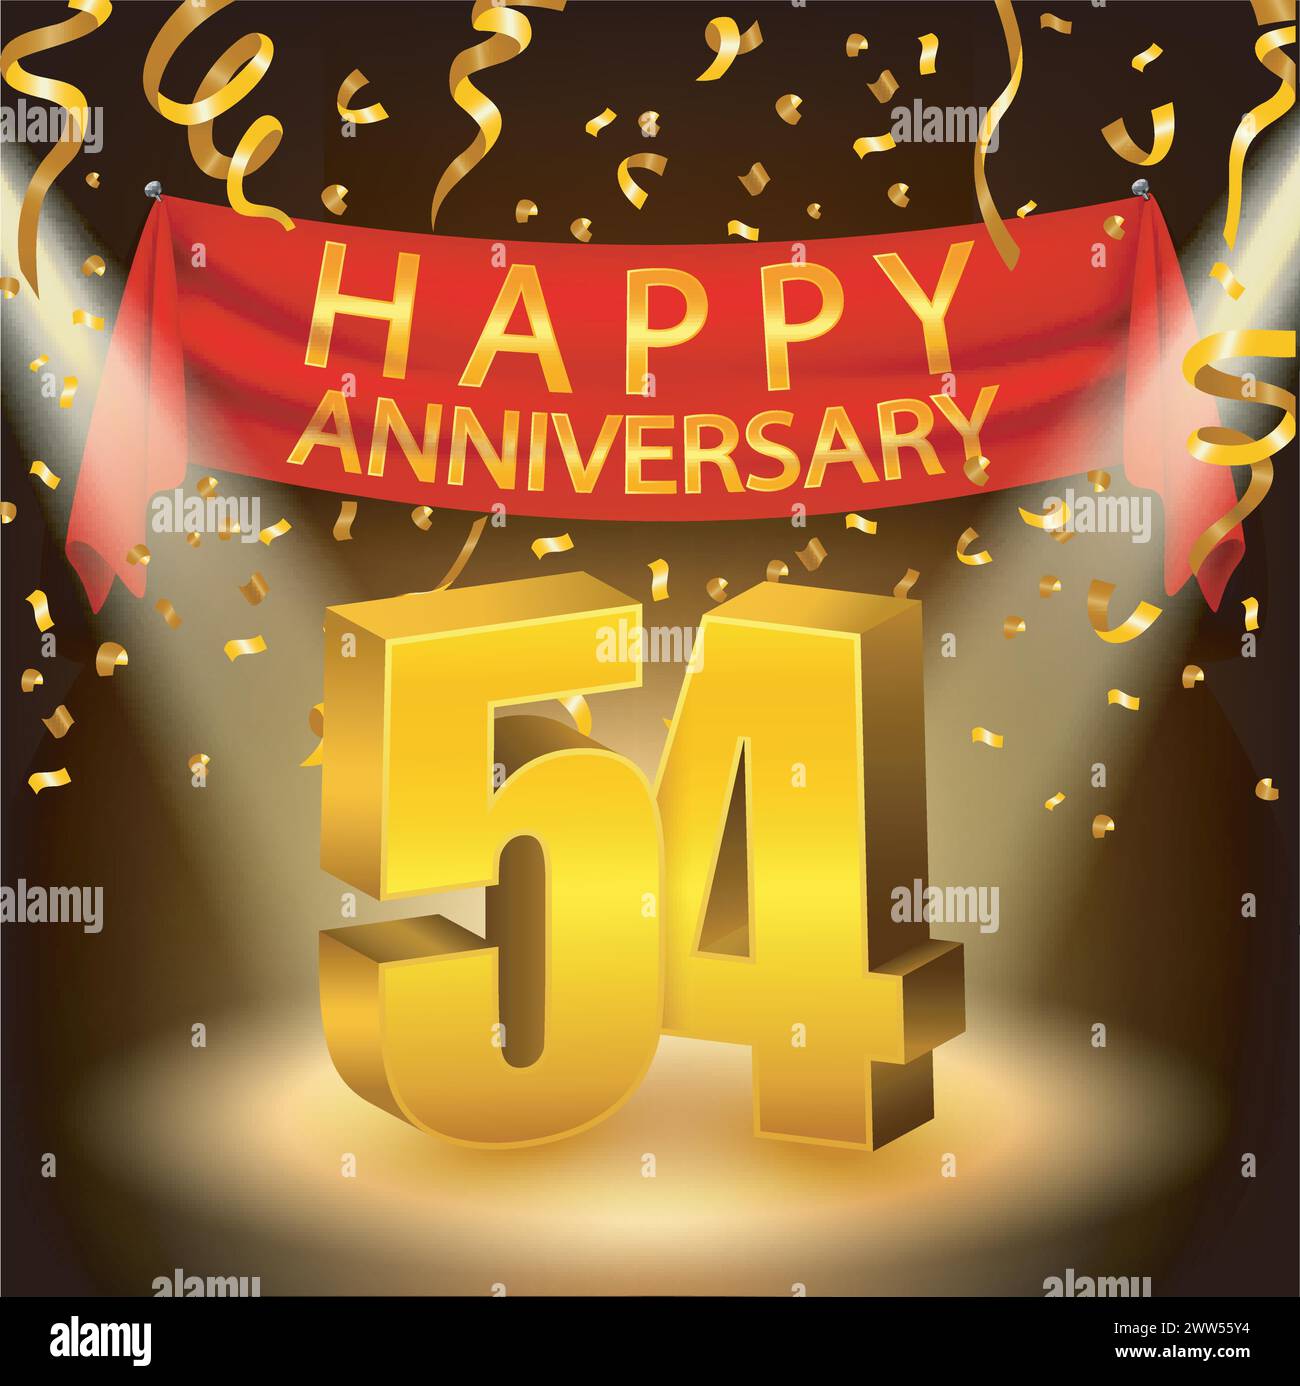 Happy 54th Anniversary Celebration mit goldenem Konfetti und Spotlight, Vektor-Illustration Stock Vektor